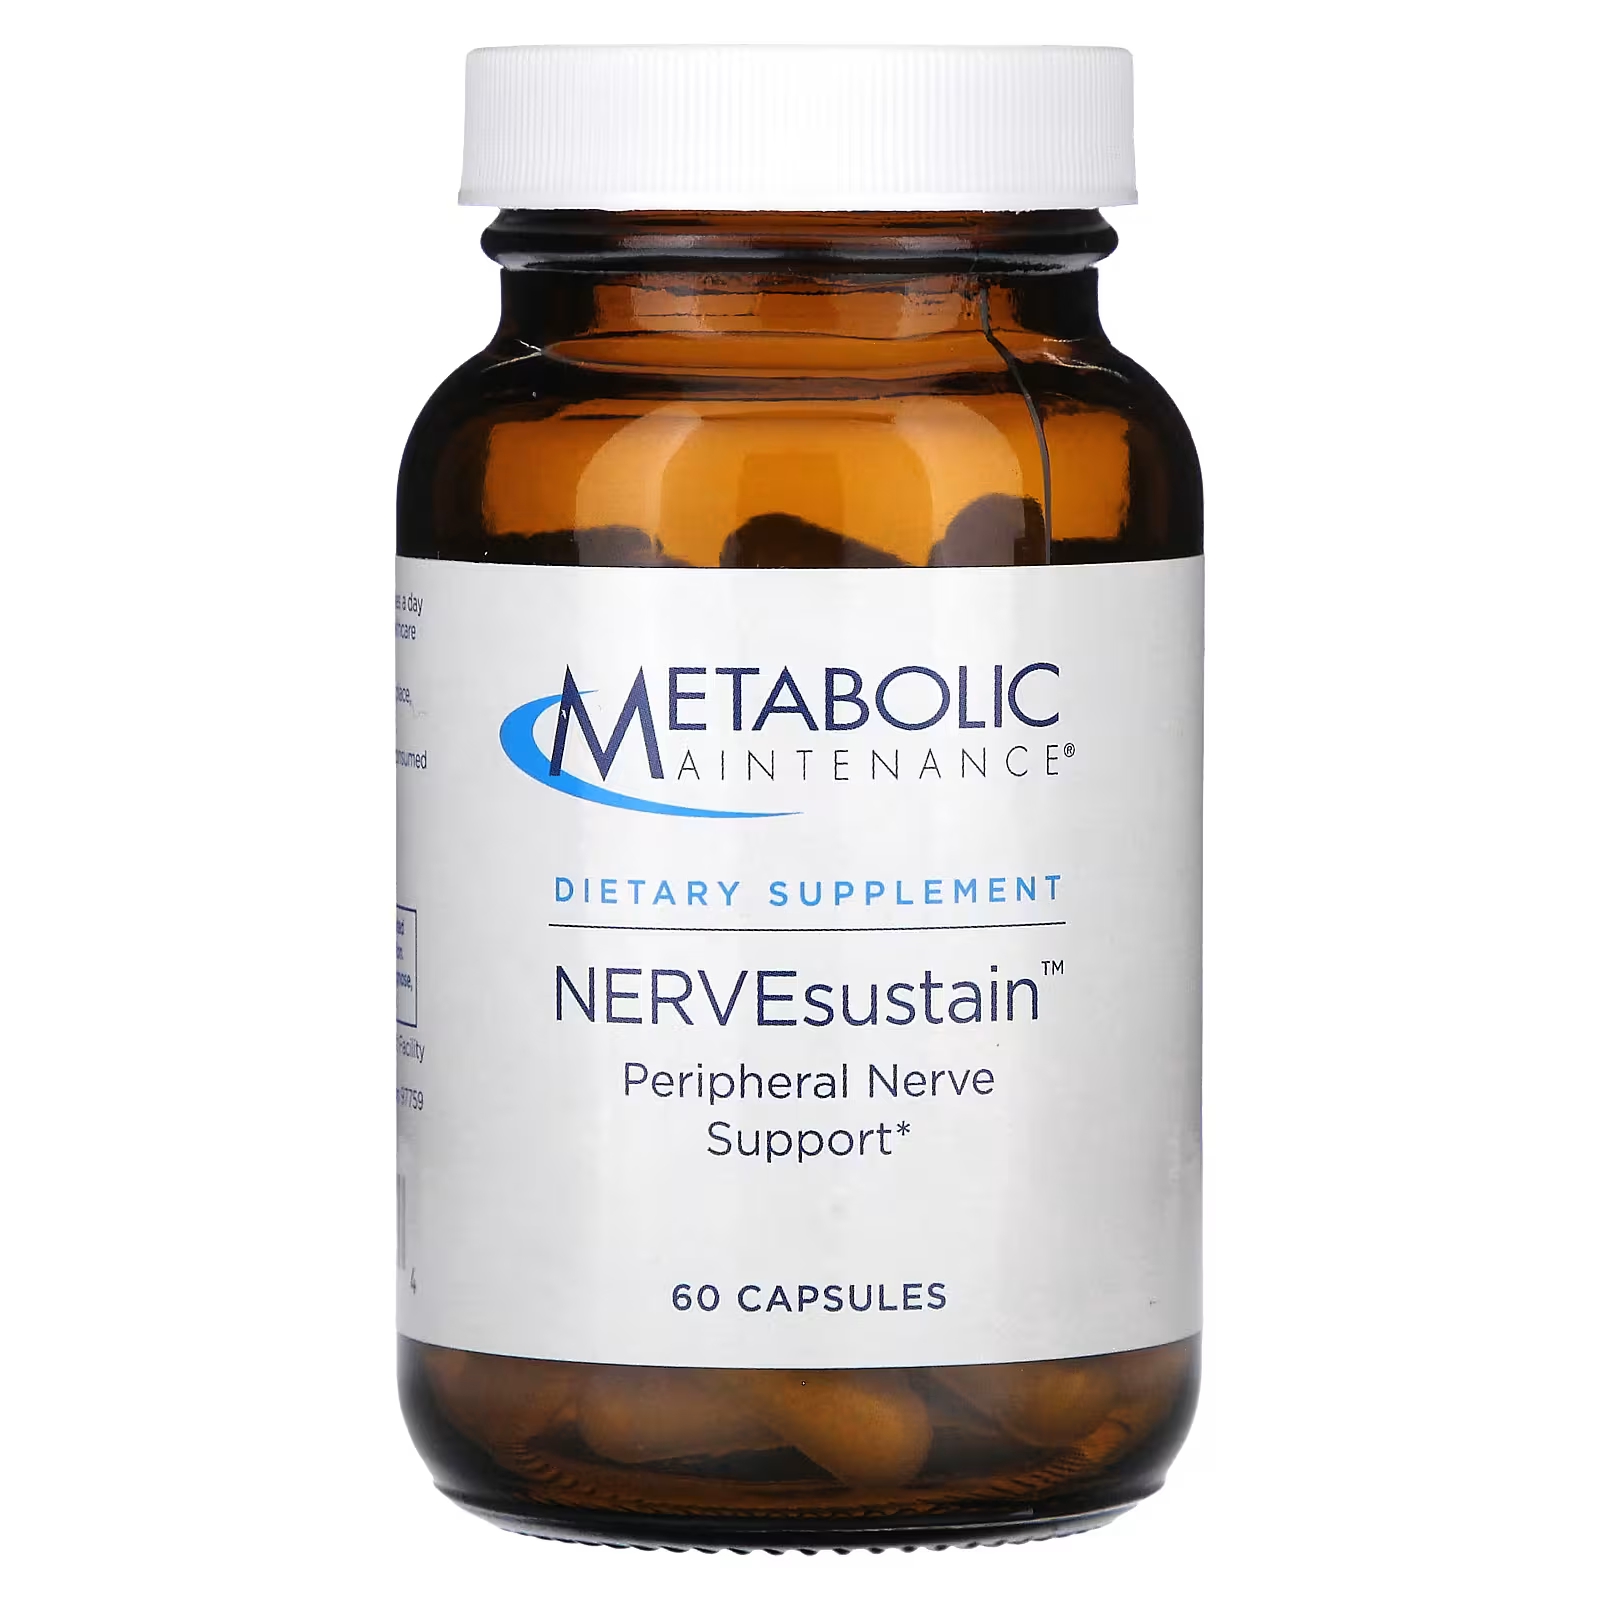 Метаболическое обслуживание NERVEsustain 60 капсул Metabolic Maintenance метаболическое обслуживание coq10 порошок апельсина 3 9 унции 110 г metabolic maintenance